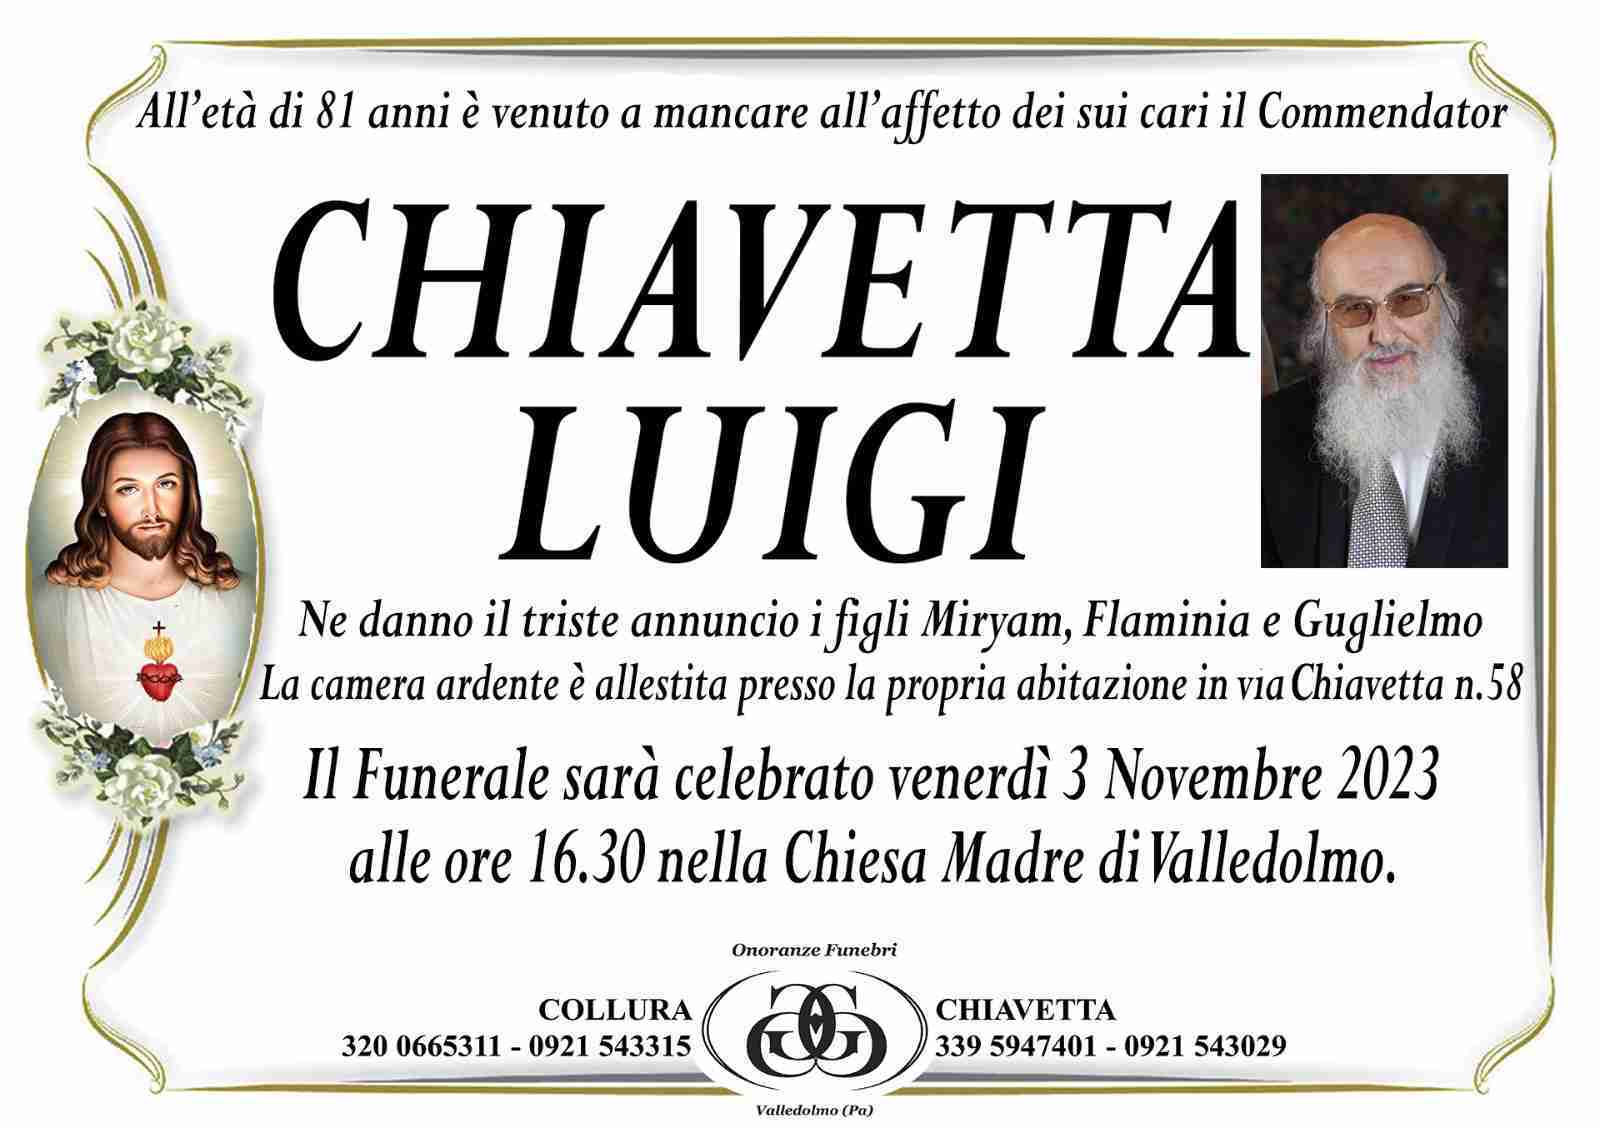 Luigi Chiavetta